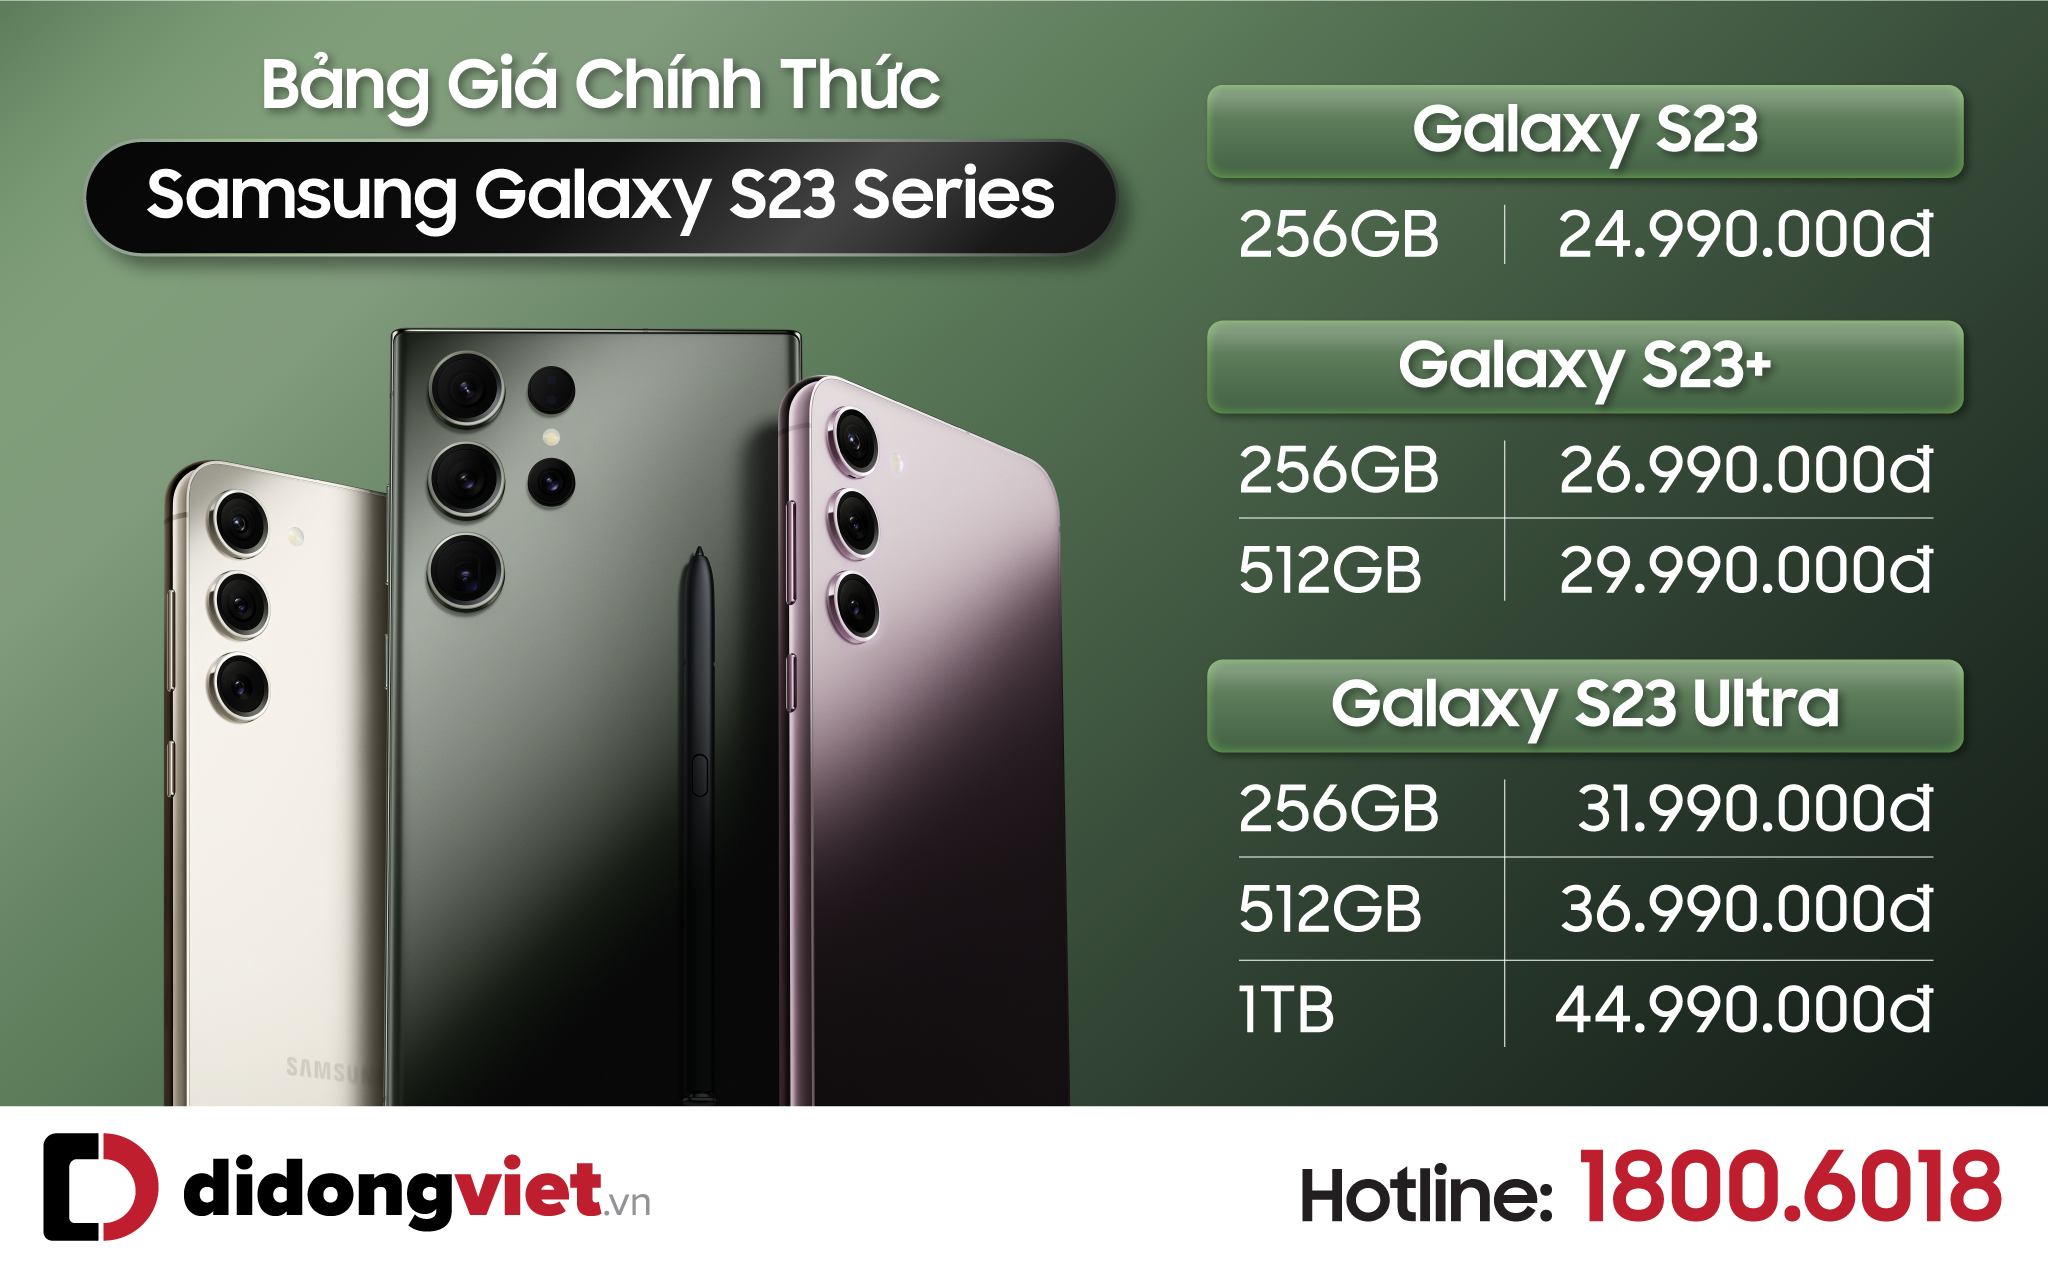 Galaxy S23 series ra mắt giá từ 24.99 triệu đồng, bộ quà khủng hơn 7 triệu đồng khi đặt trước tại Di Động Việt